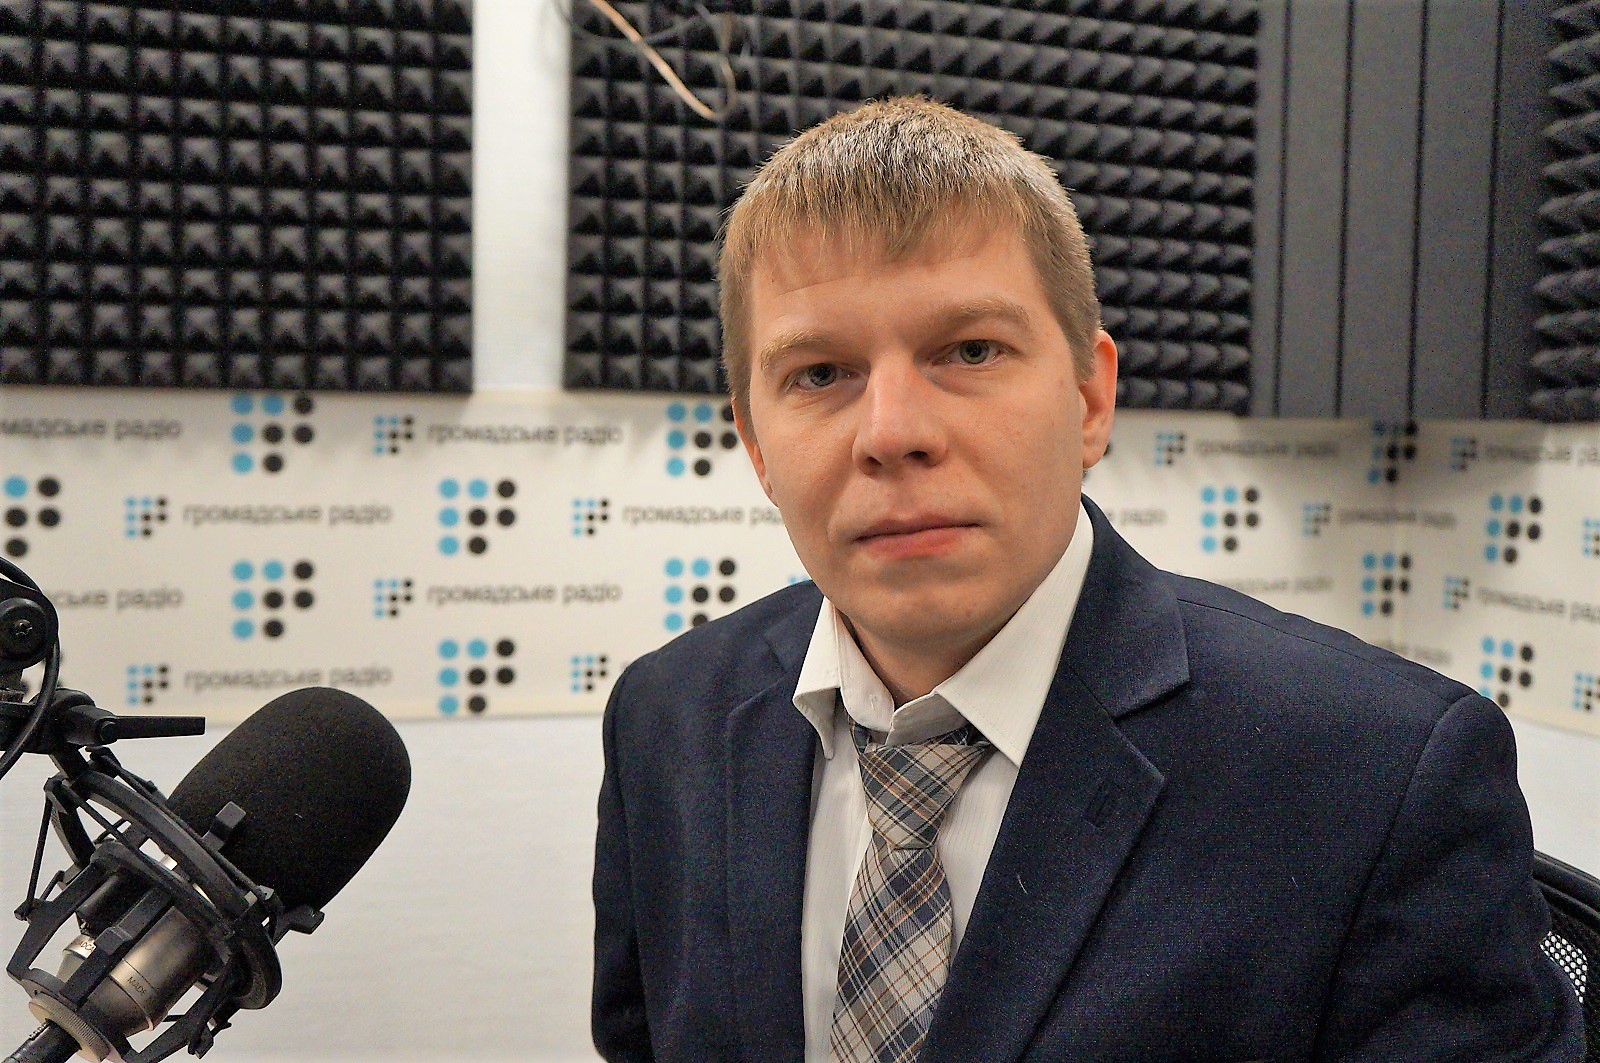 Харьковский адвокат заявляет, что его клиенты содержались в «тайных тюрьмах» СБУ